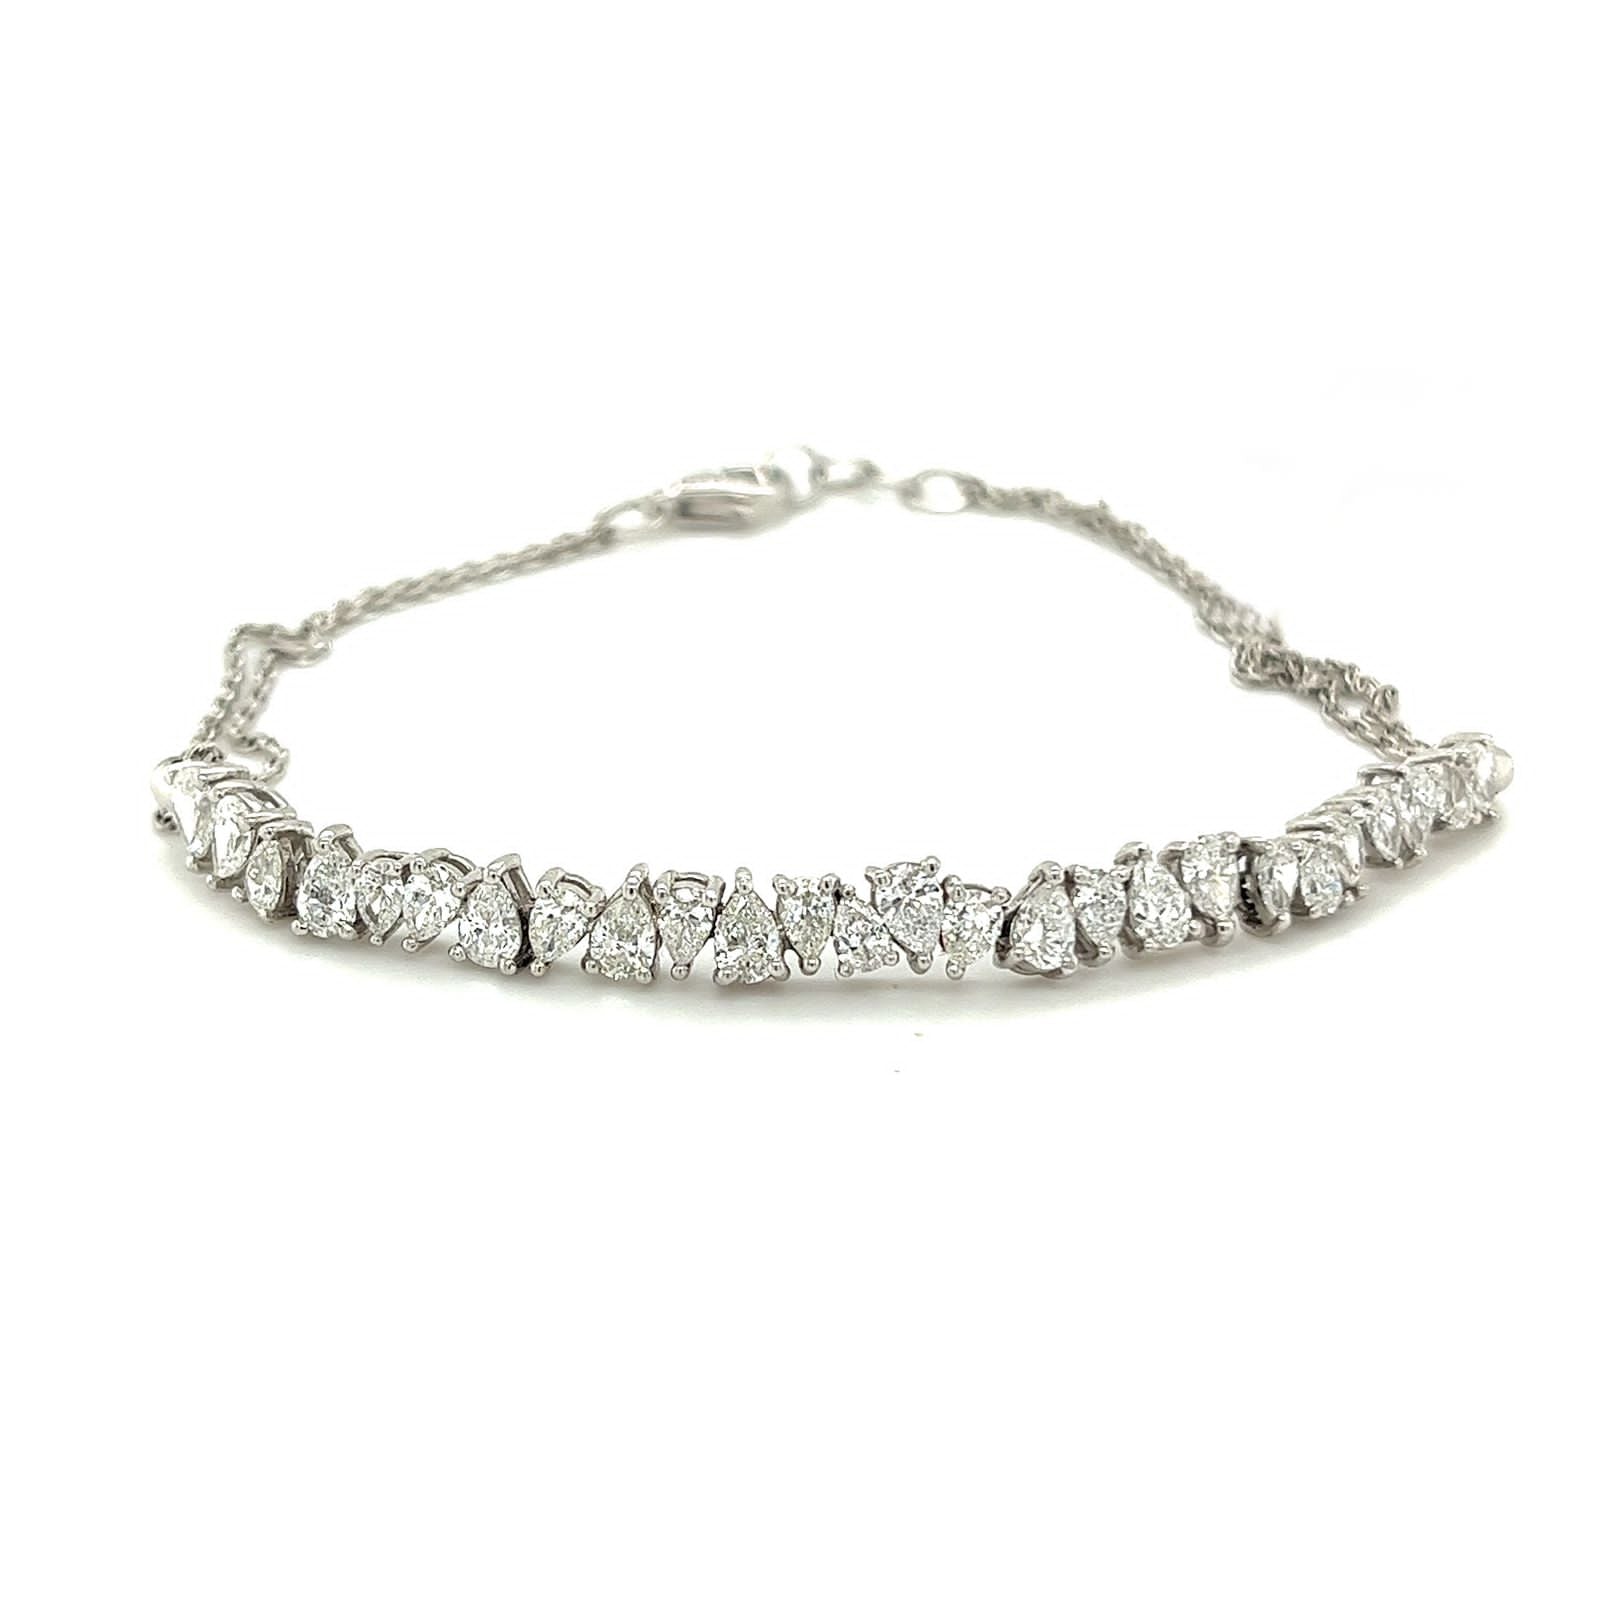 Irregular Shaped Pear Diamonds Bracelet in 18K White Gold - 5430086B